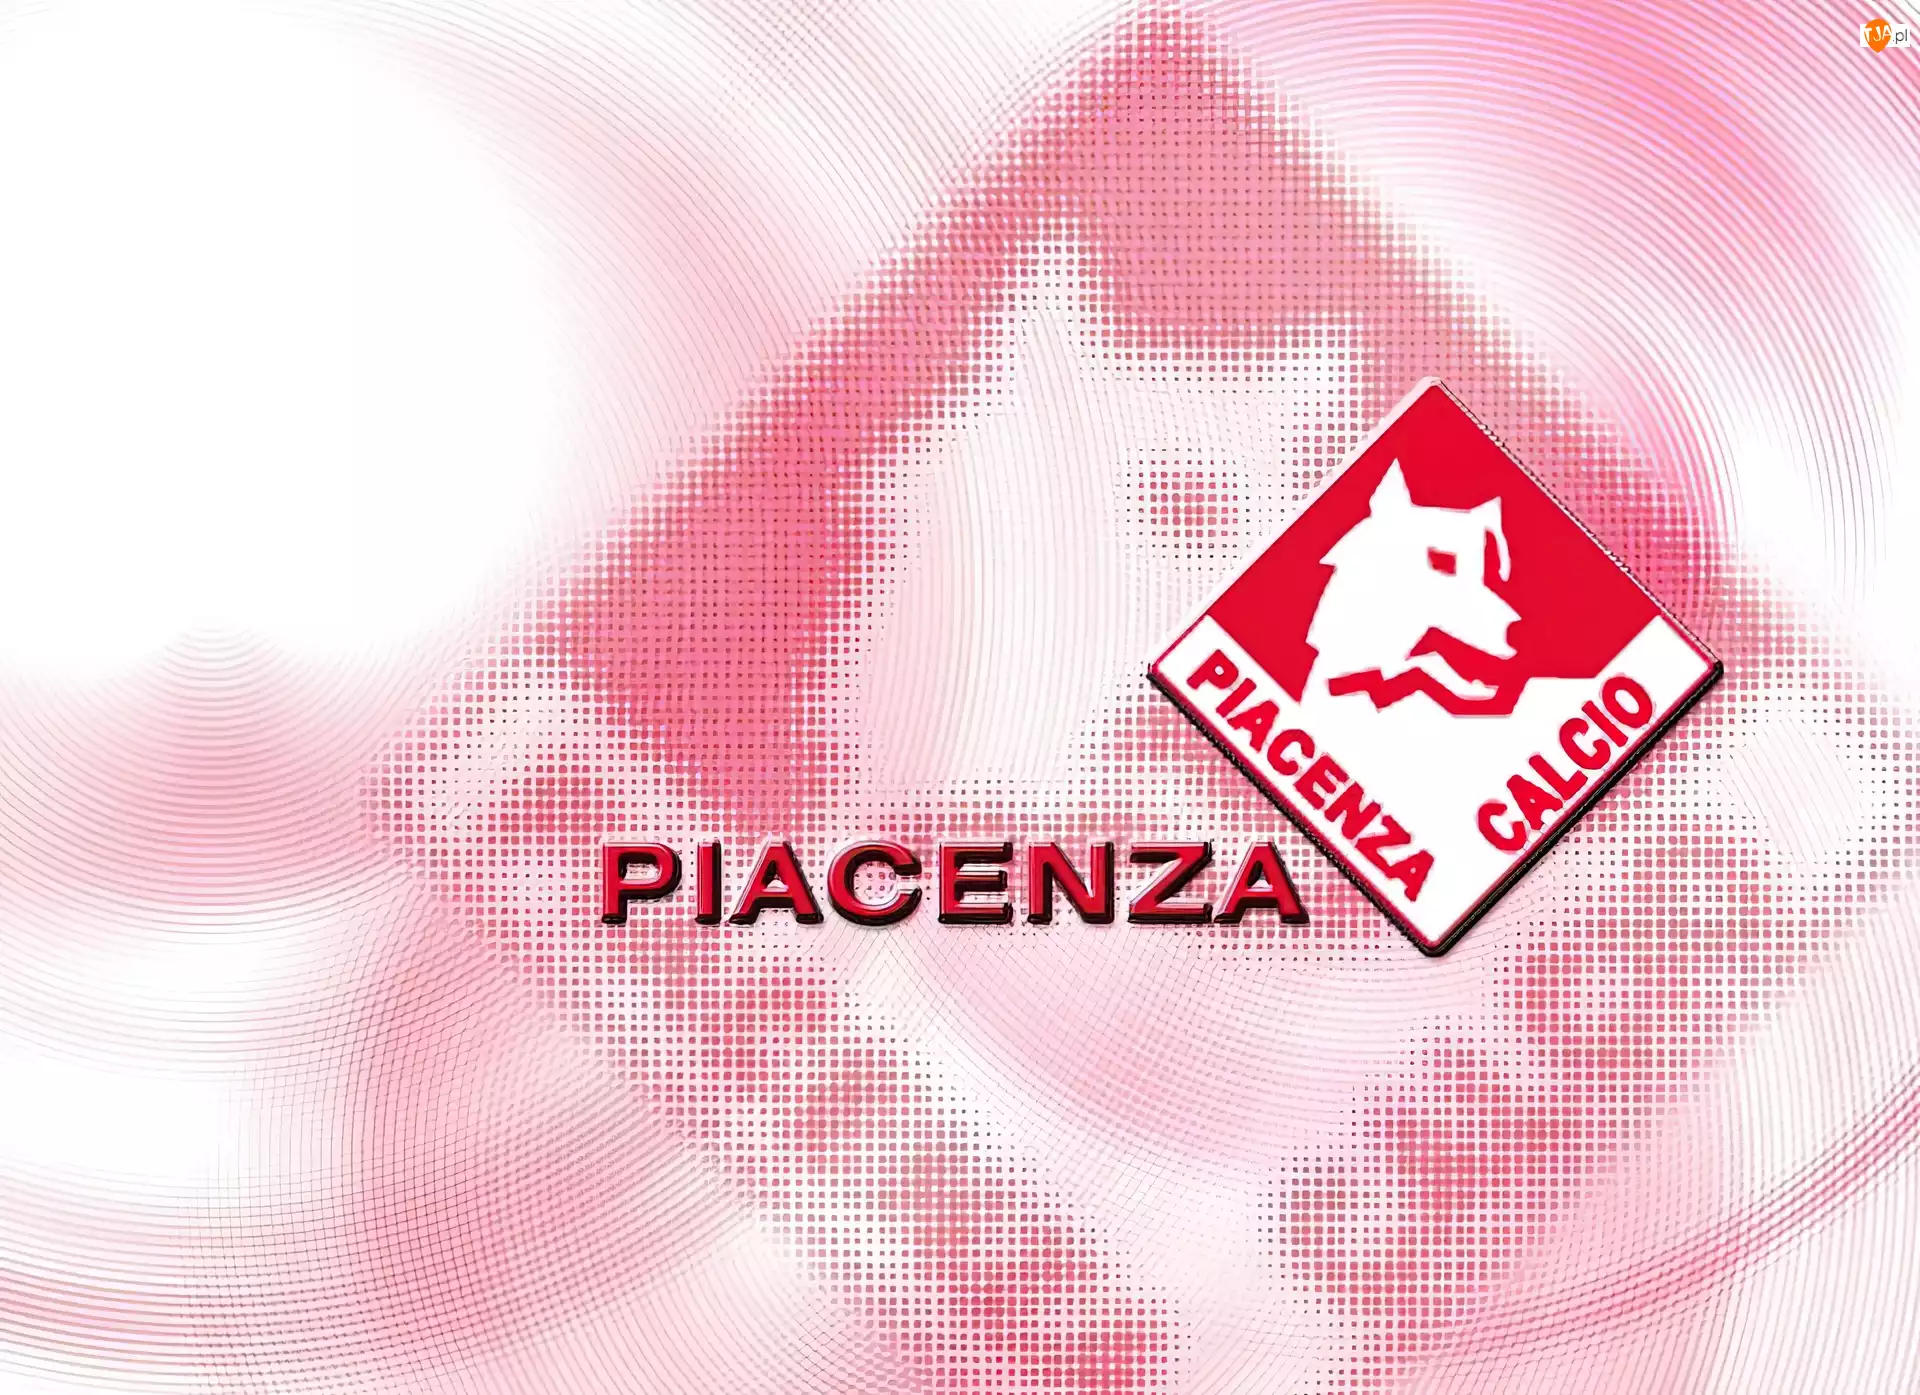 Piacenza, Piłka nożna, znaczek